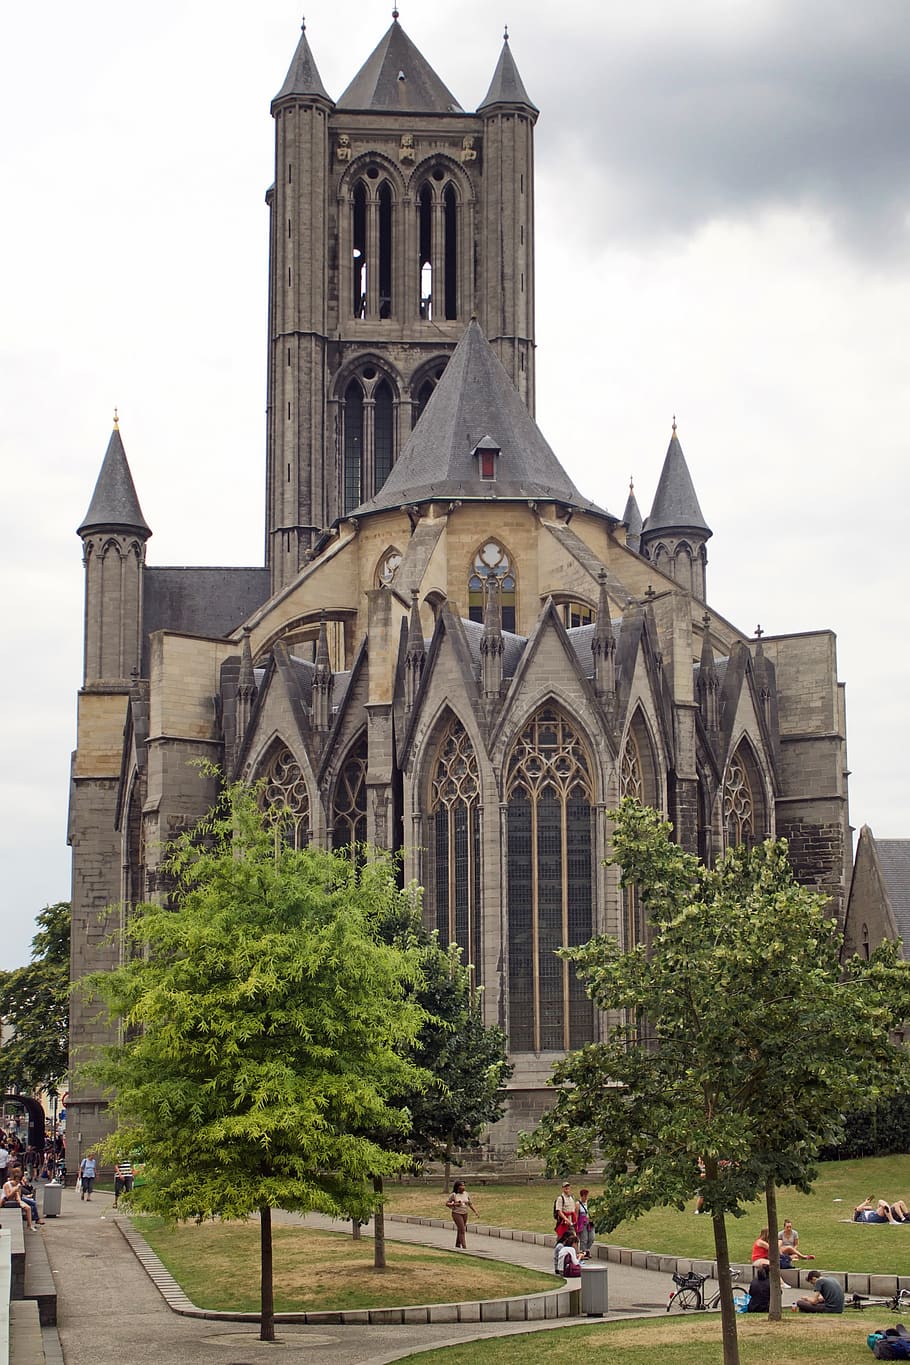 st nicholas church, church, gent, schelde gotik, belgium, parish church, architecture, built structure, building exterior, place of worship